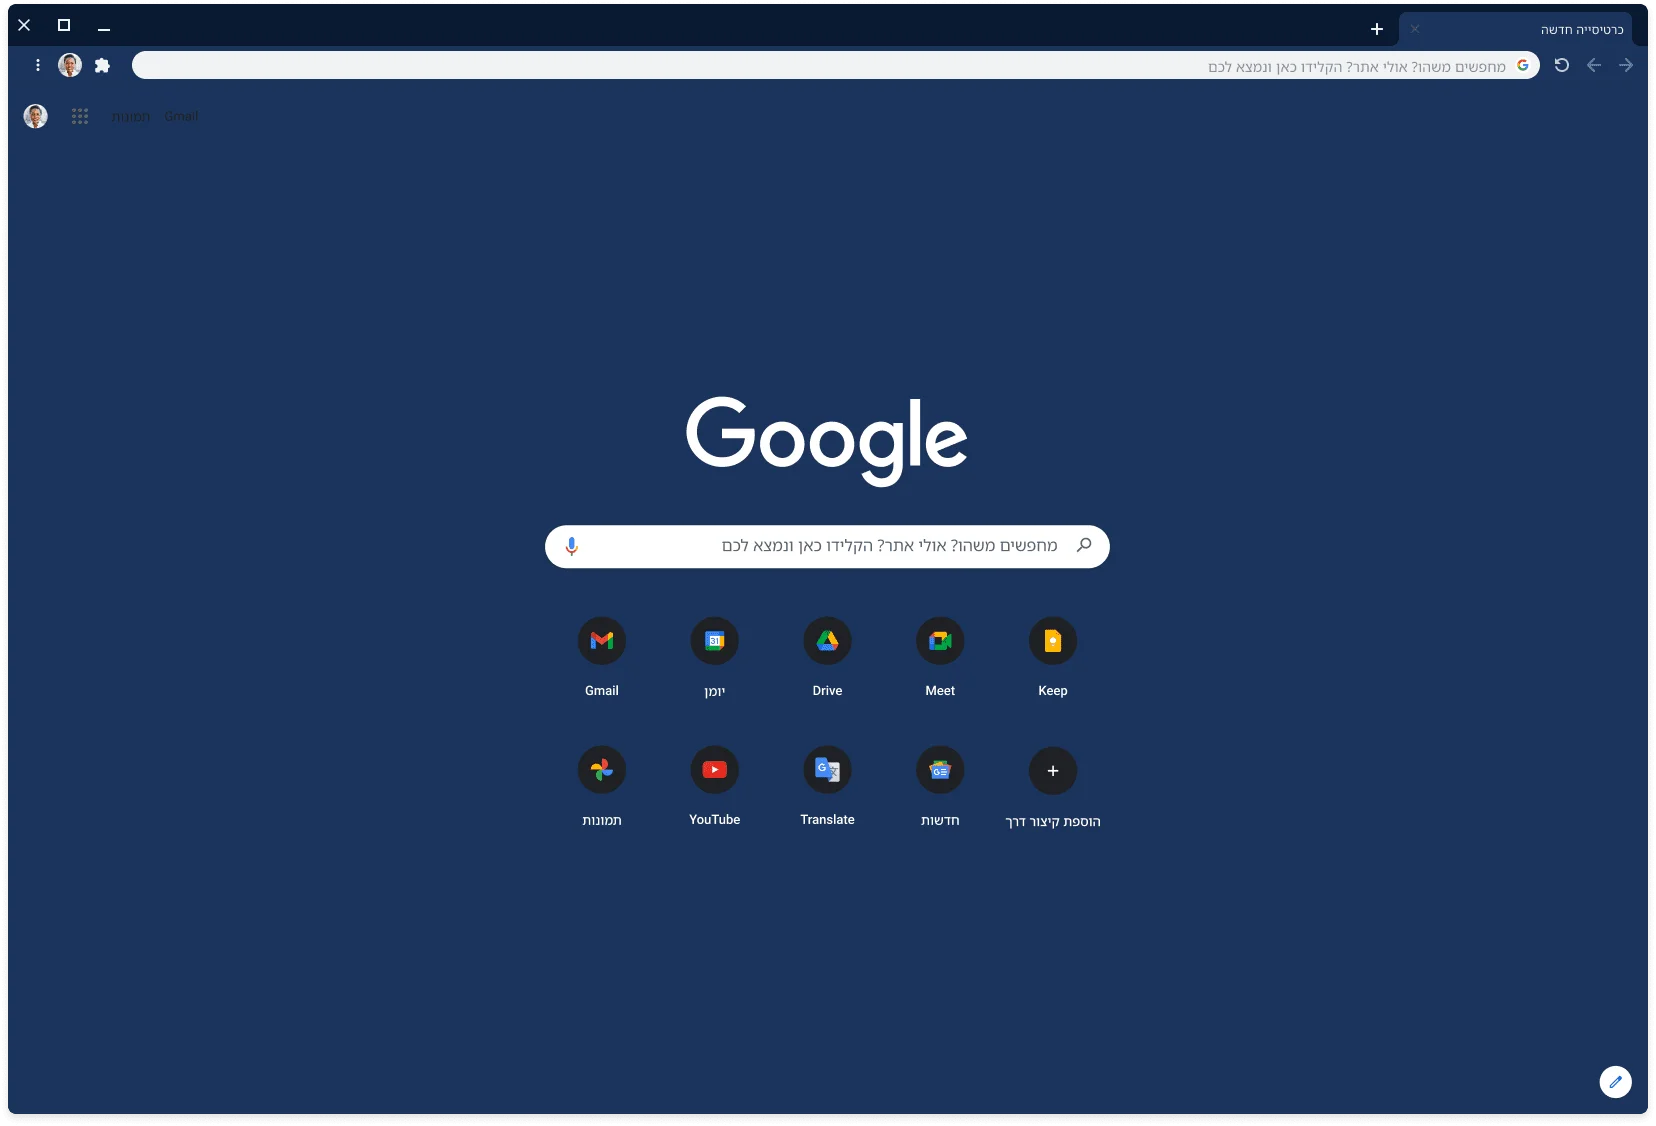 האתר Google.com מוצג בחלון של דפדפן Chrome בגרסת העיצוב האפור.